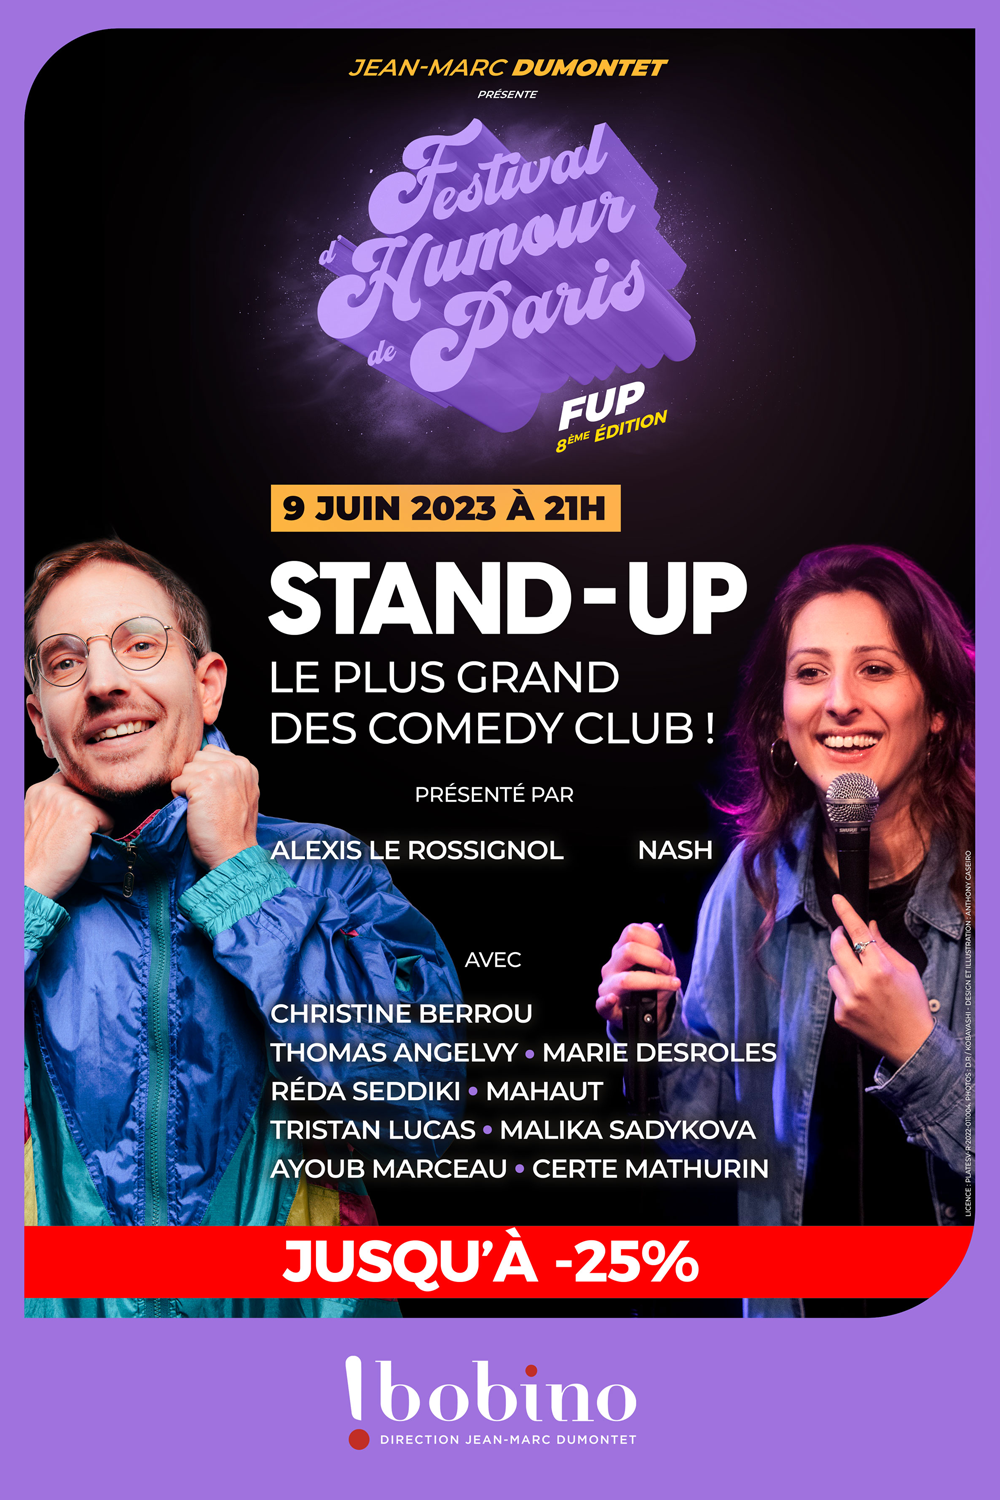 Stand-up Volume 1 - Festival d'Humour de Paris FUP